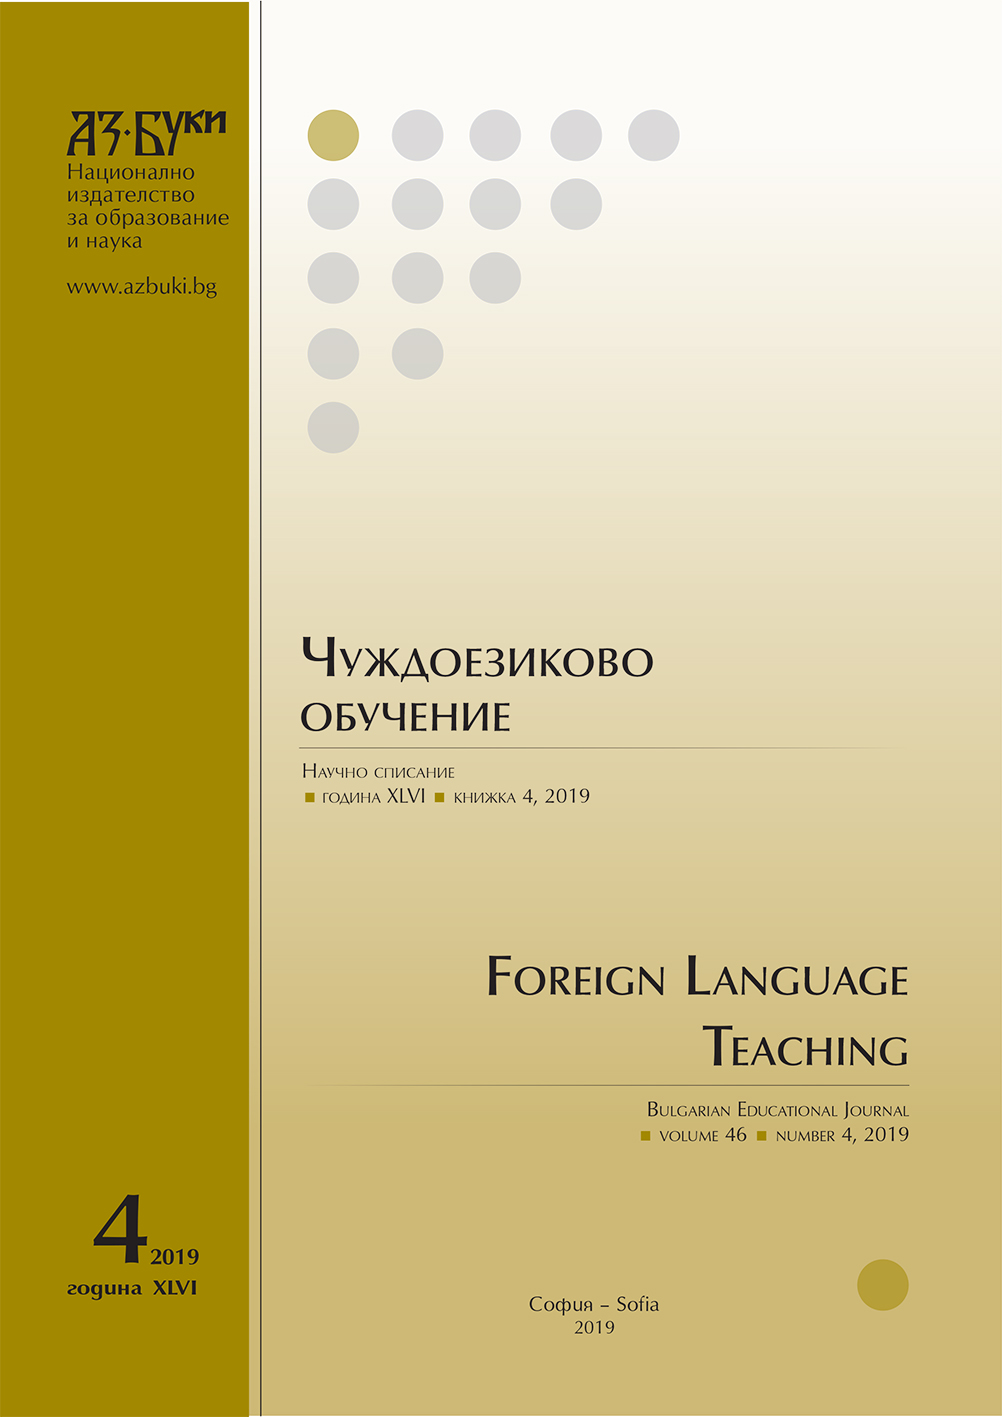 Мястото на есето в обучението по български език като чужд